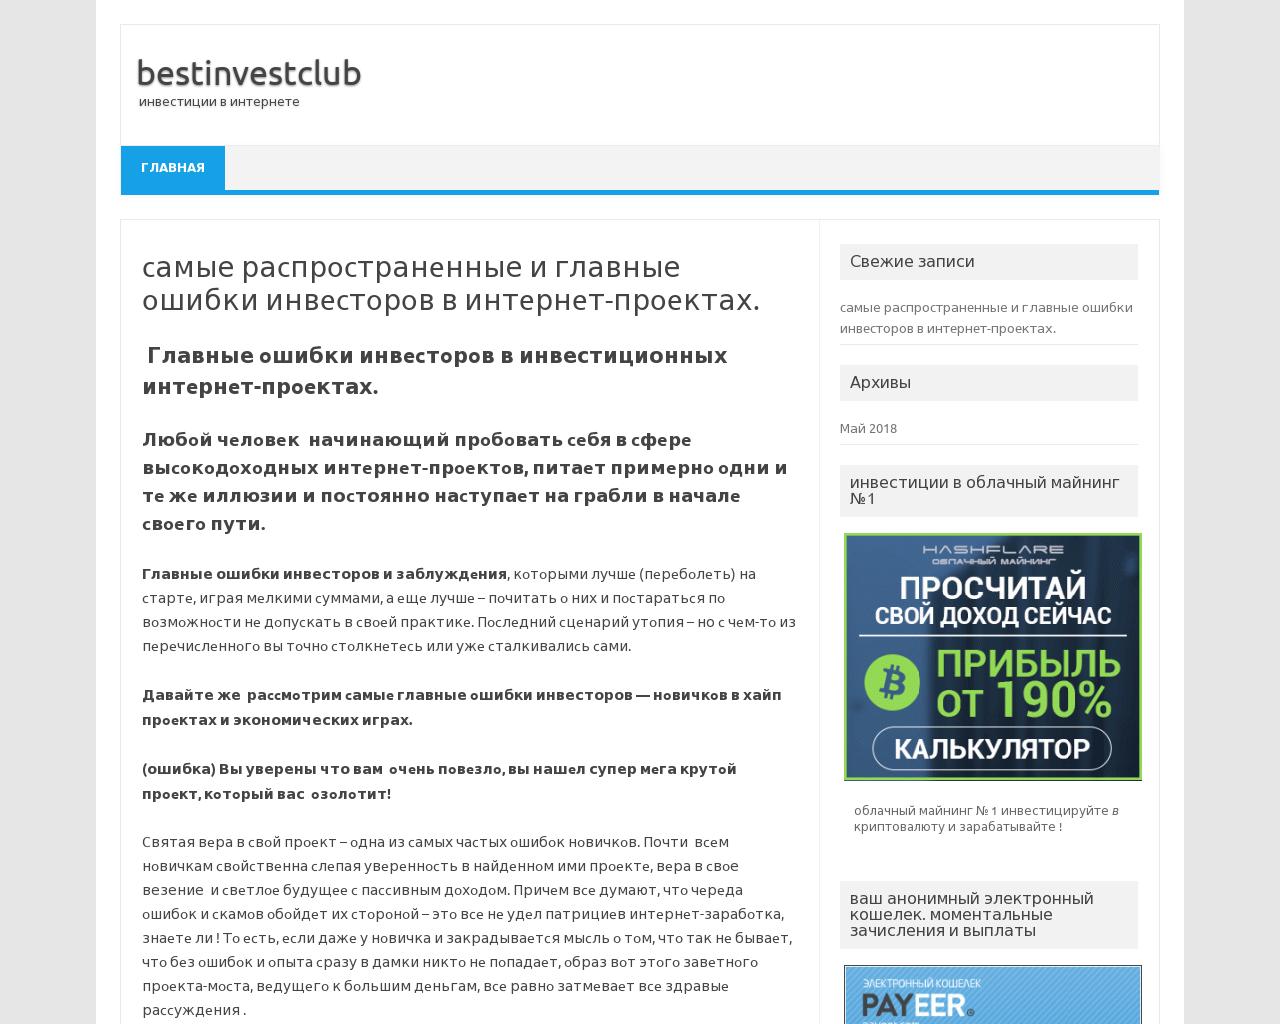 Изображение сайта bestinvestclub.ru в разрешении 1280x1024